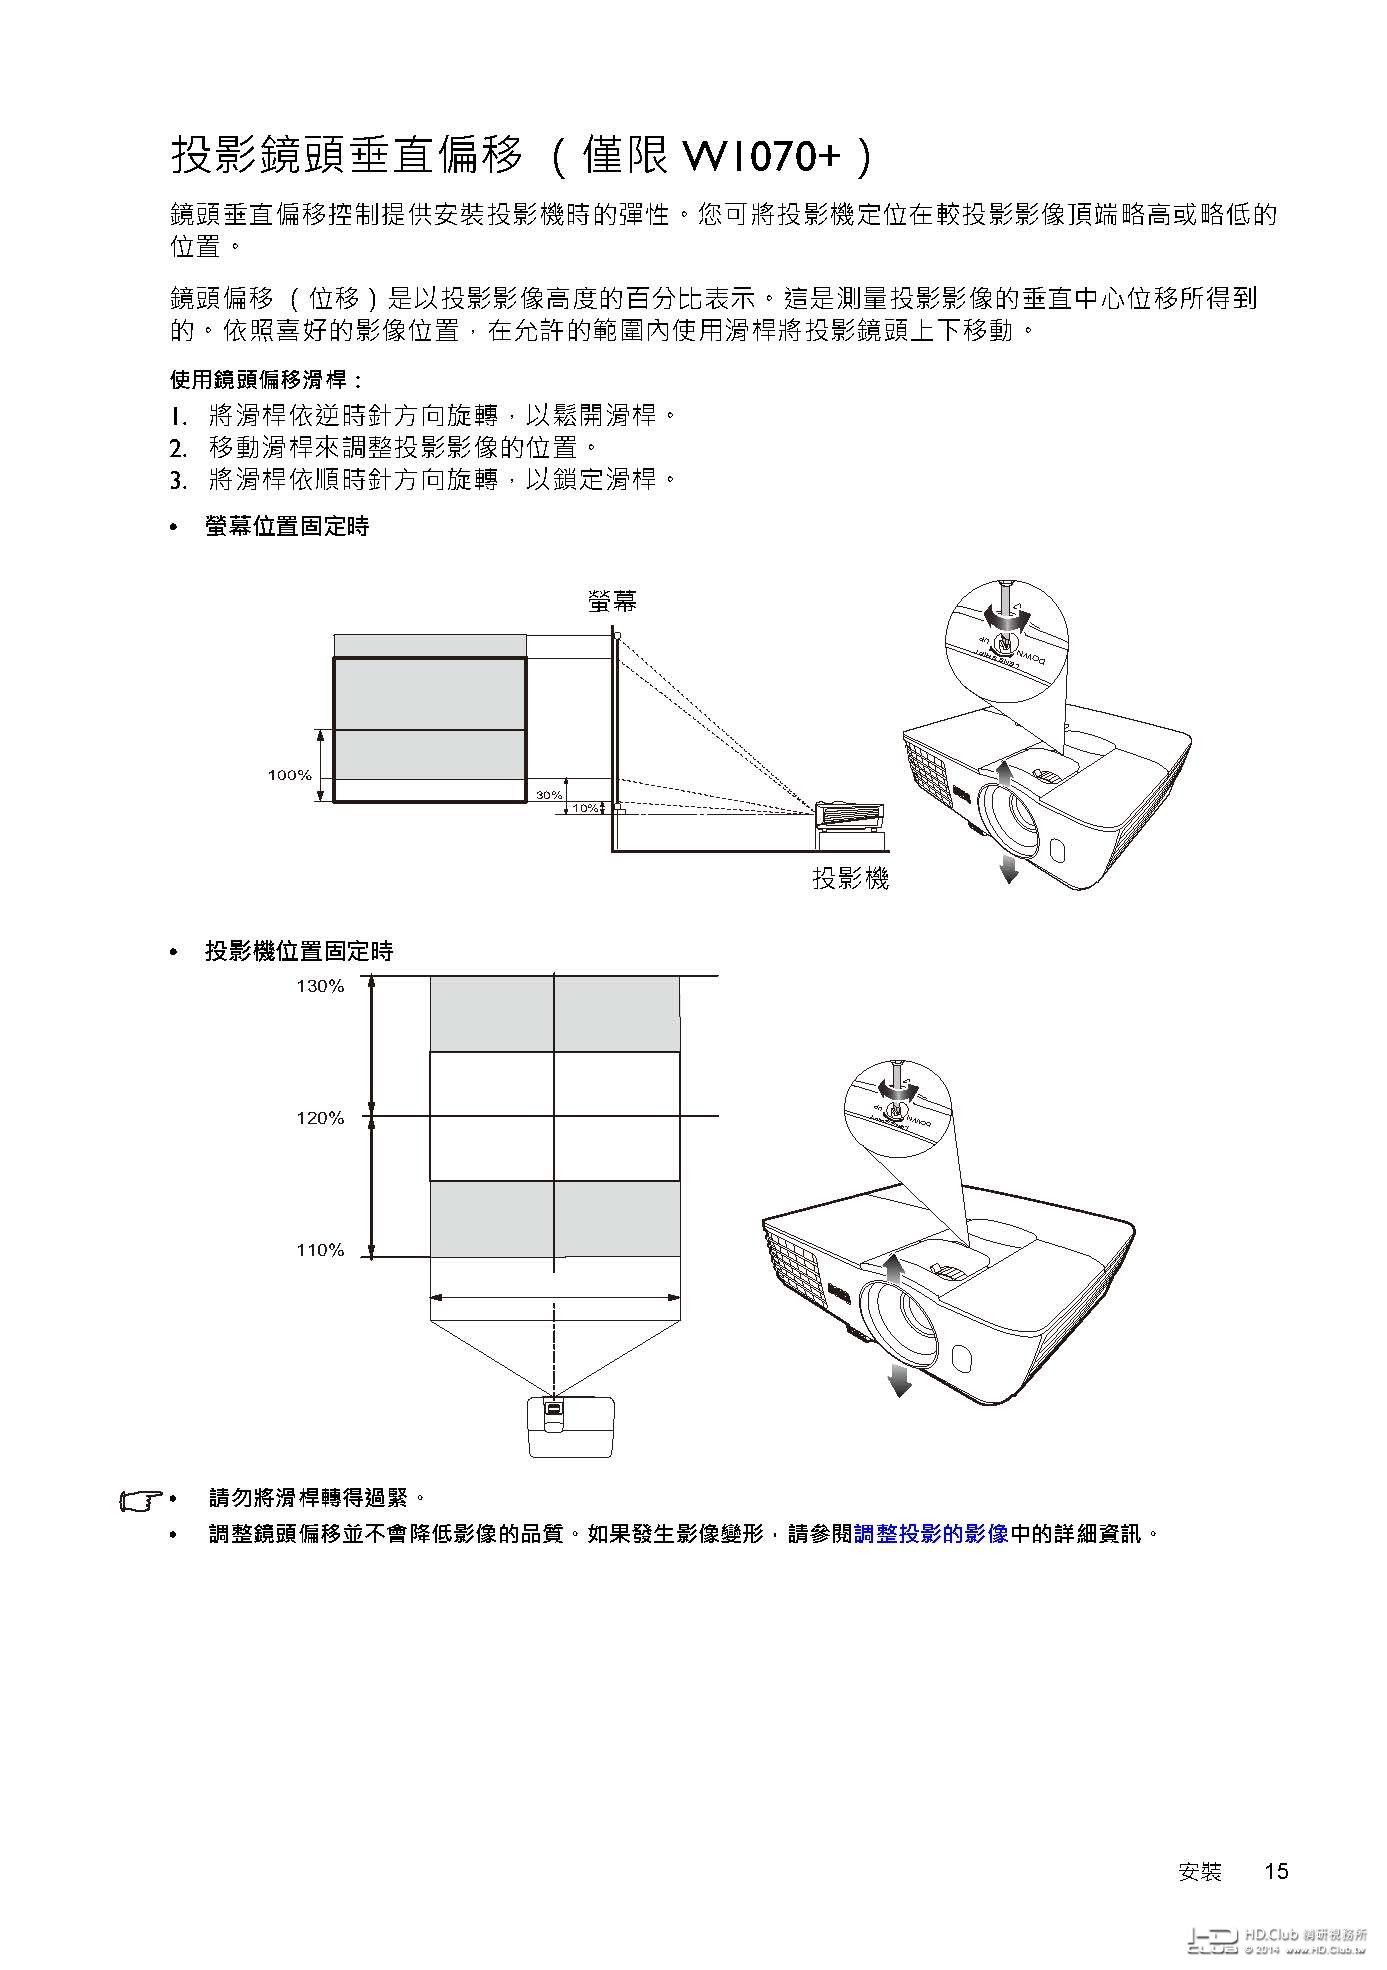 bqtw-projector-manual-w1070 -user_manual_tc_頁面_15.jpg